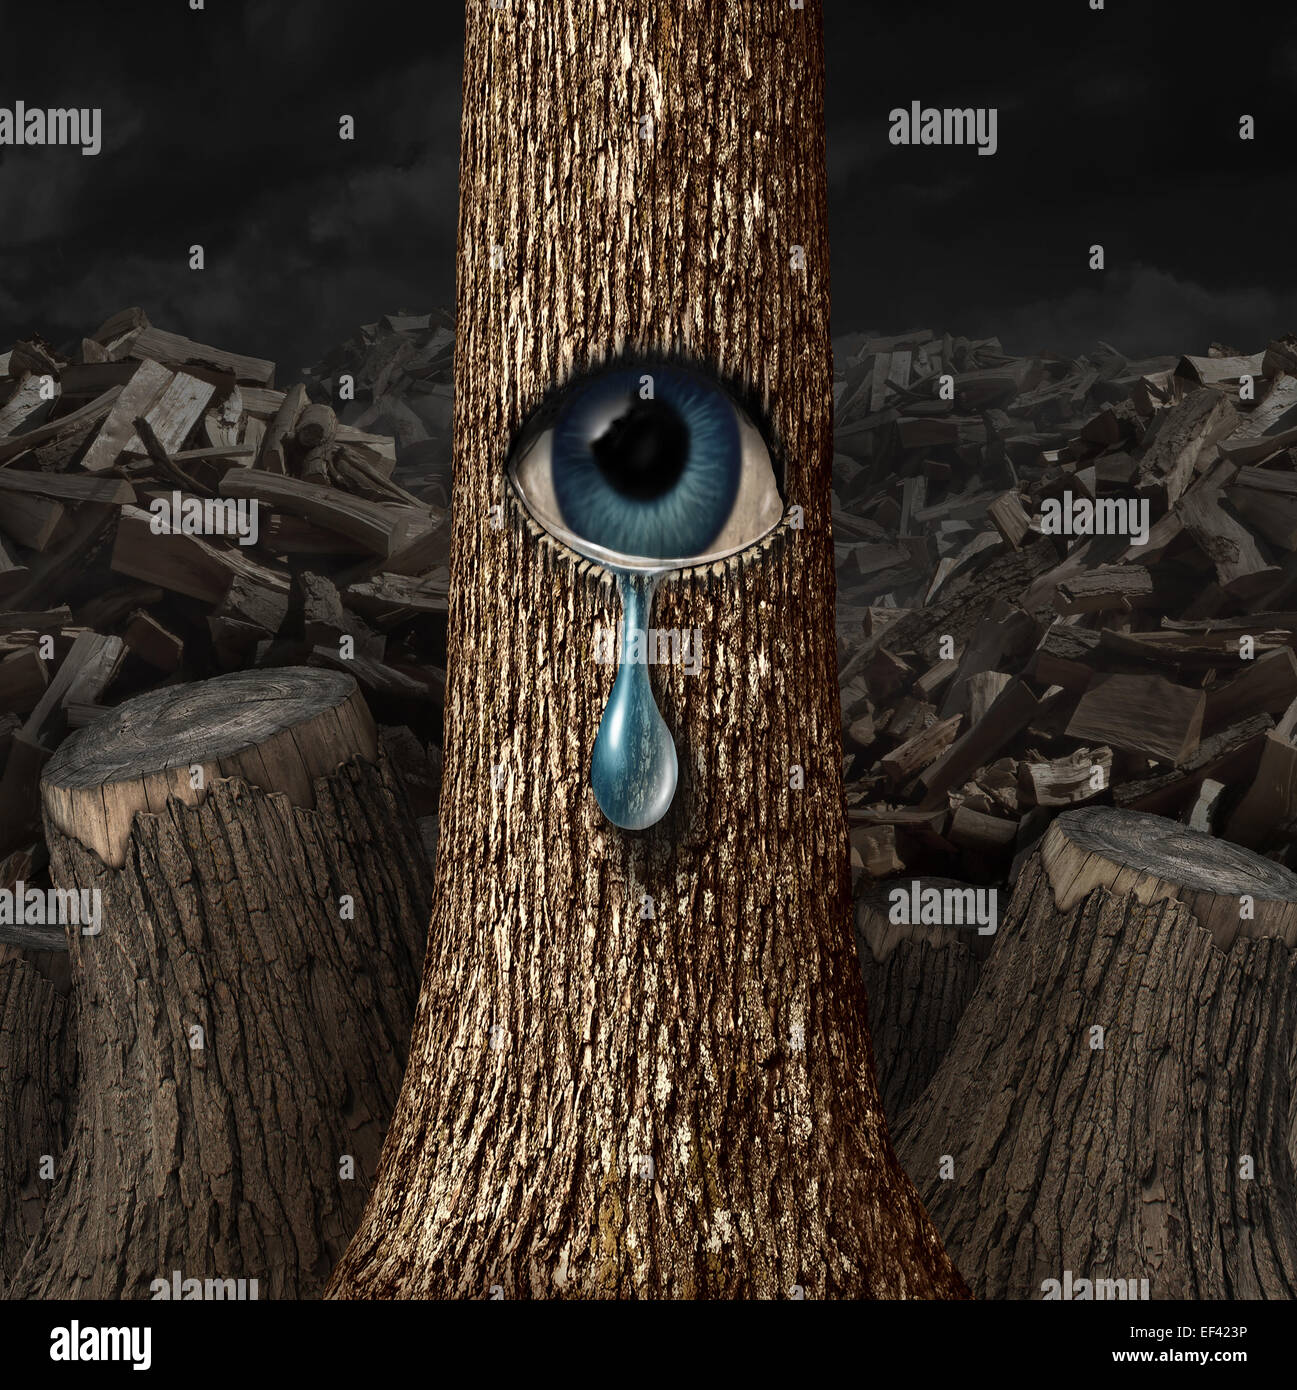 Mutter Natur weint Konzept als Hintergrund von Hackgut und Stämme mit einem Überlebenden Baum mit einem offenen Auge Weinen eine Träne als Metapher für den gescheiterten Naturschutz geschnitten. Stockfoto